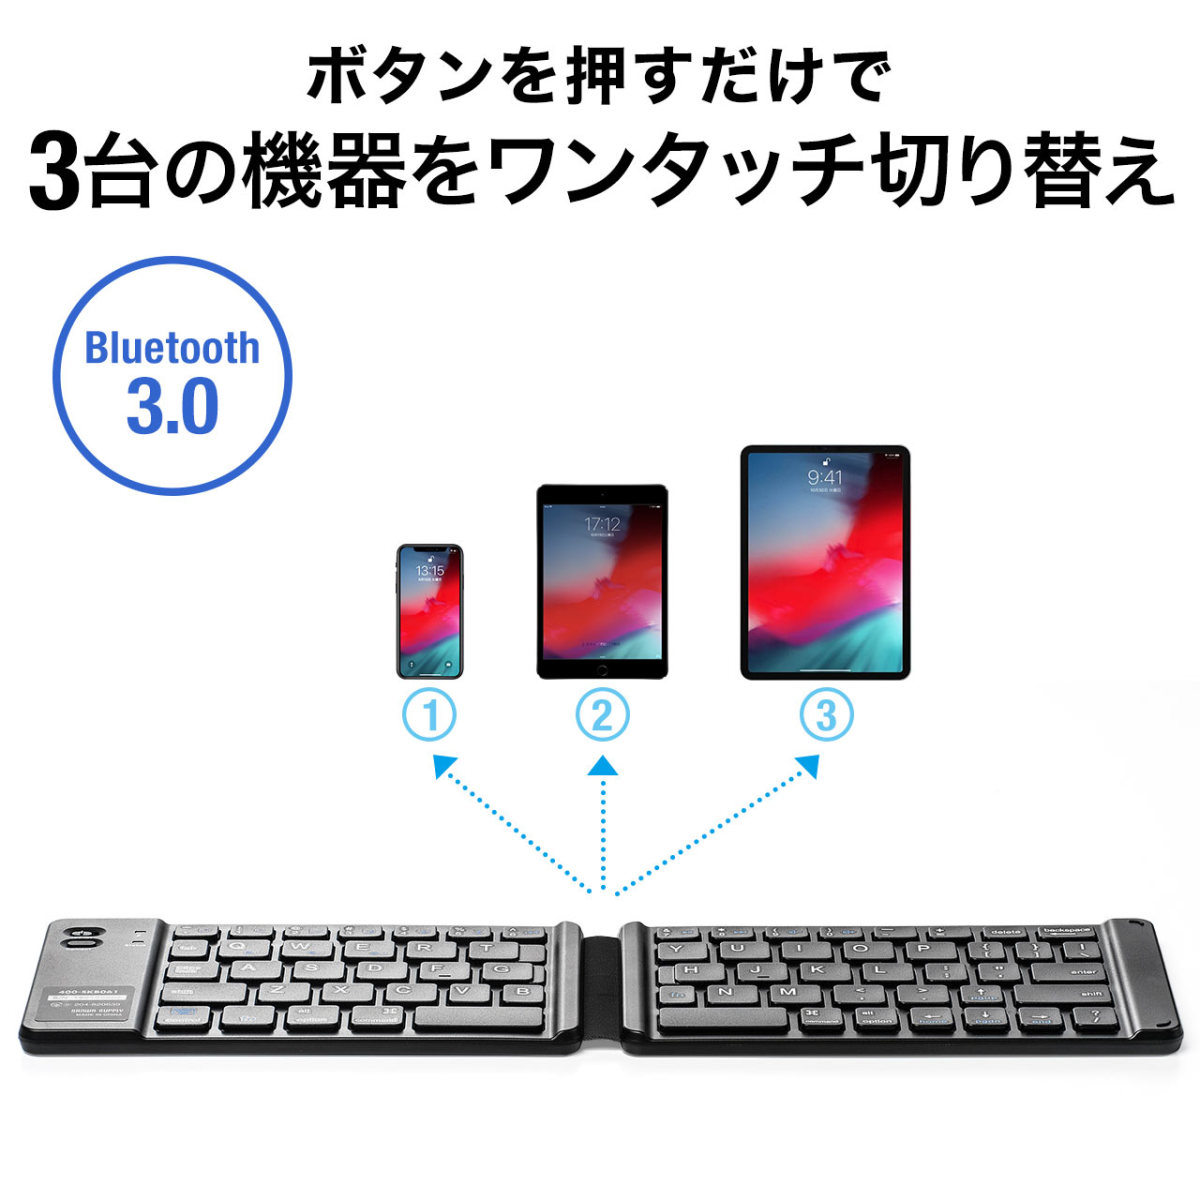 iClever キーボード 折り畳み Bluetooth ワイヤレス モバイルキーボード タッチパッド付き マルチペアリング ブルートゥース5.1 USB ipad ミニキーボ